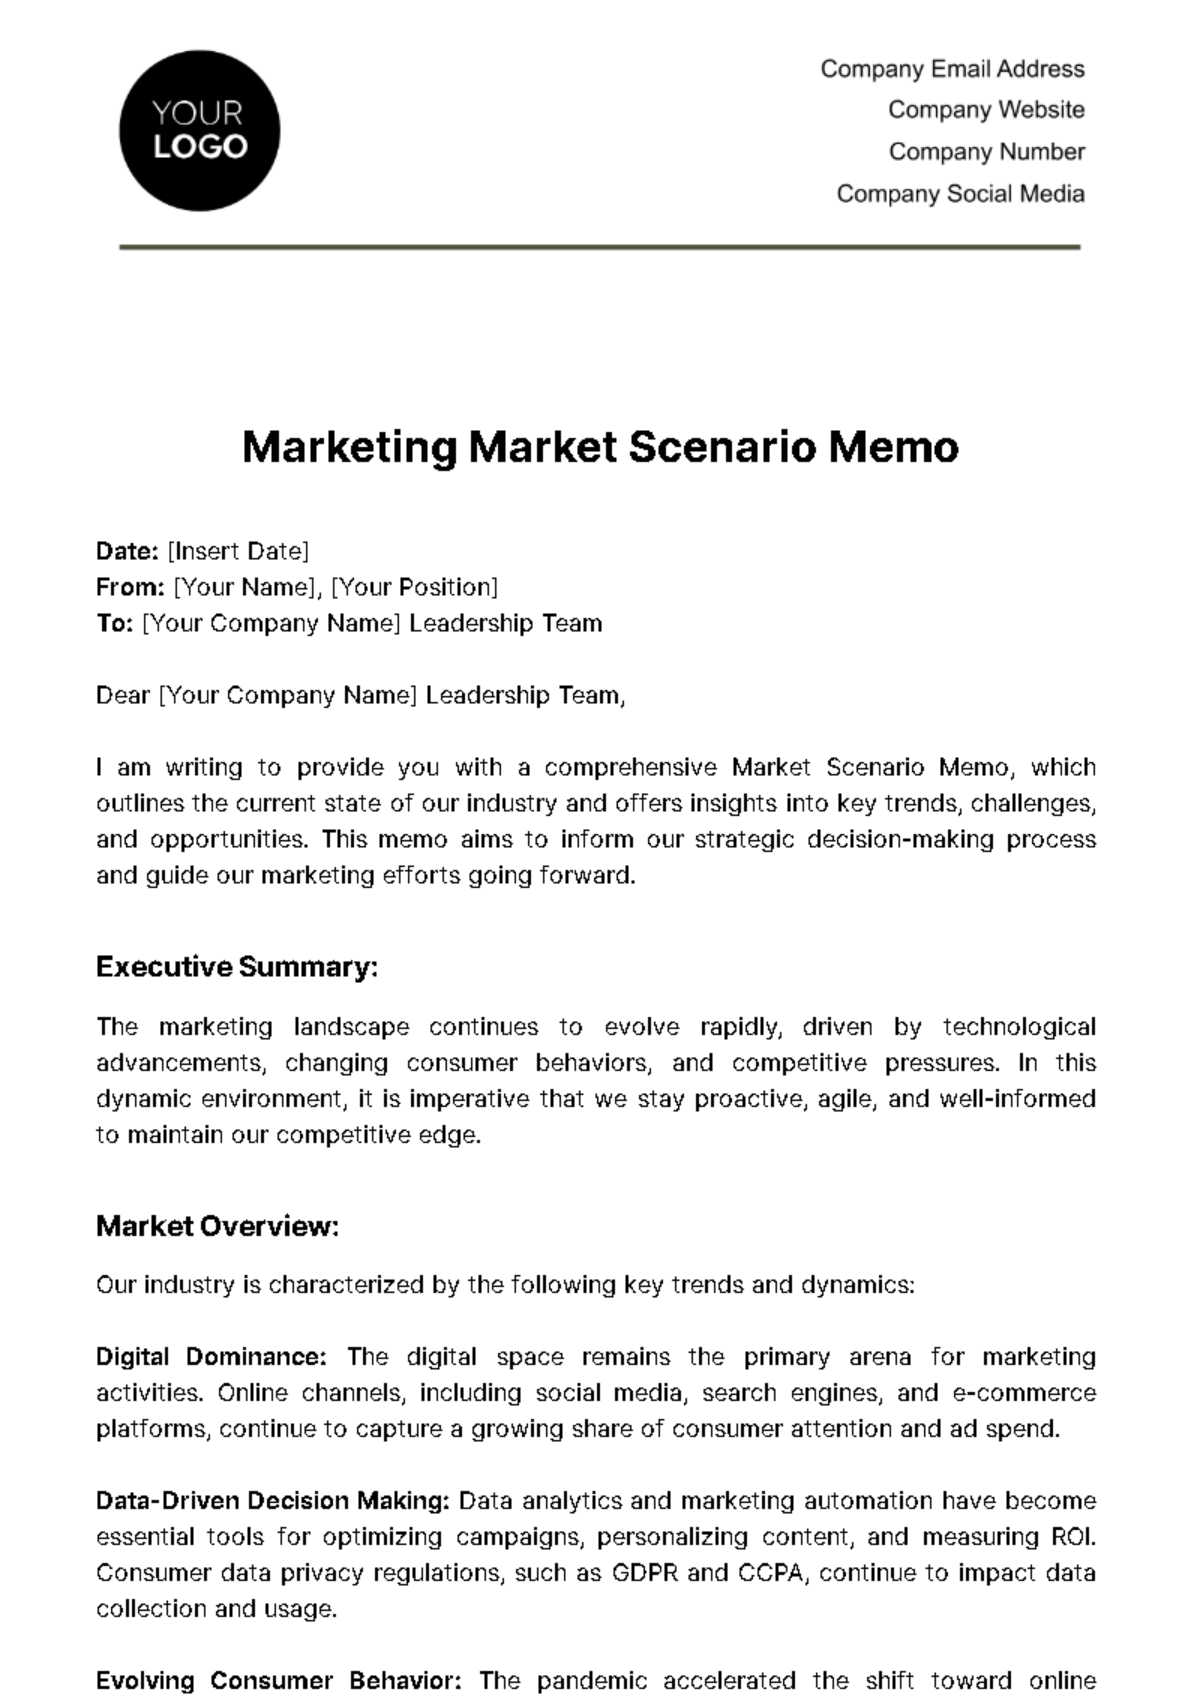 Marketing Market Scenario Memo Template